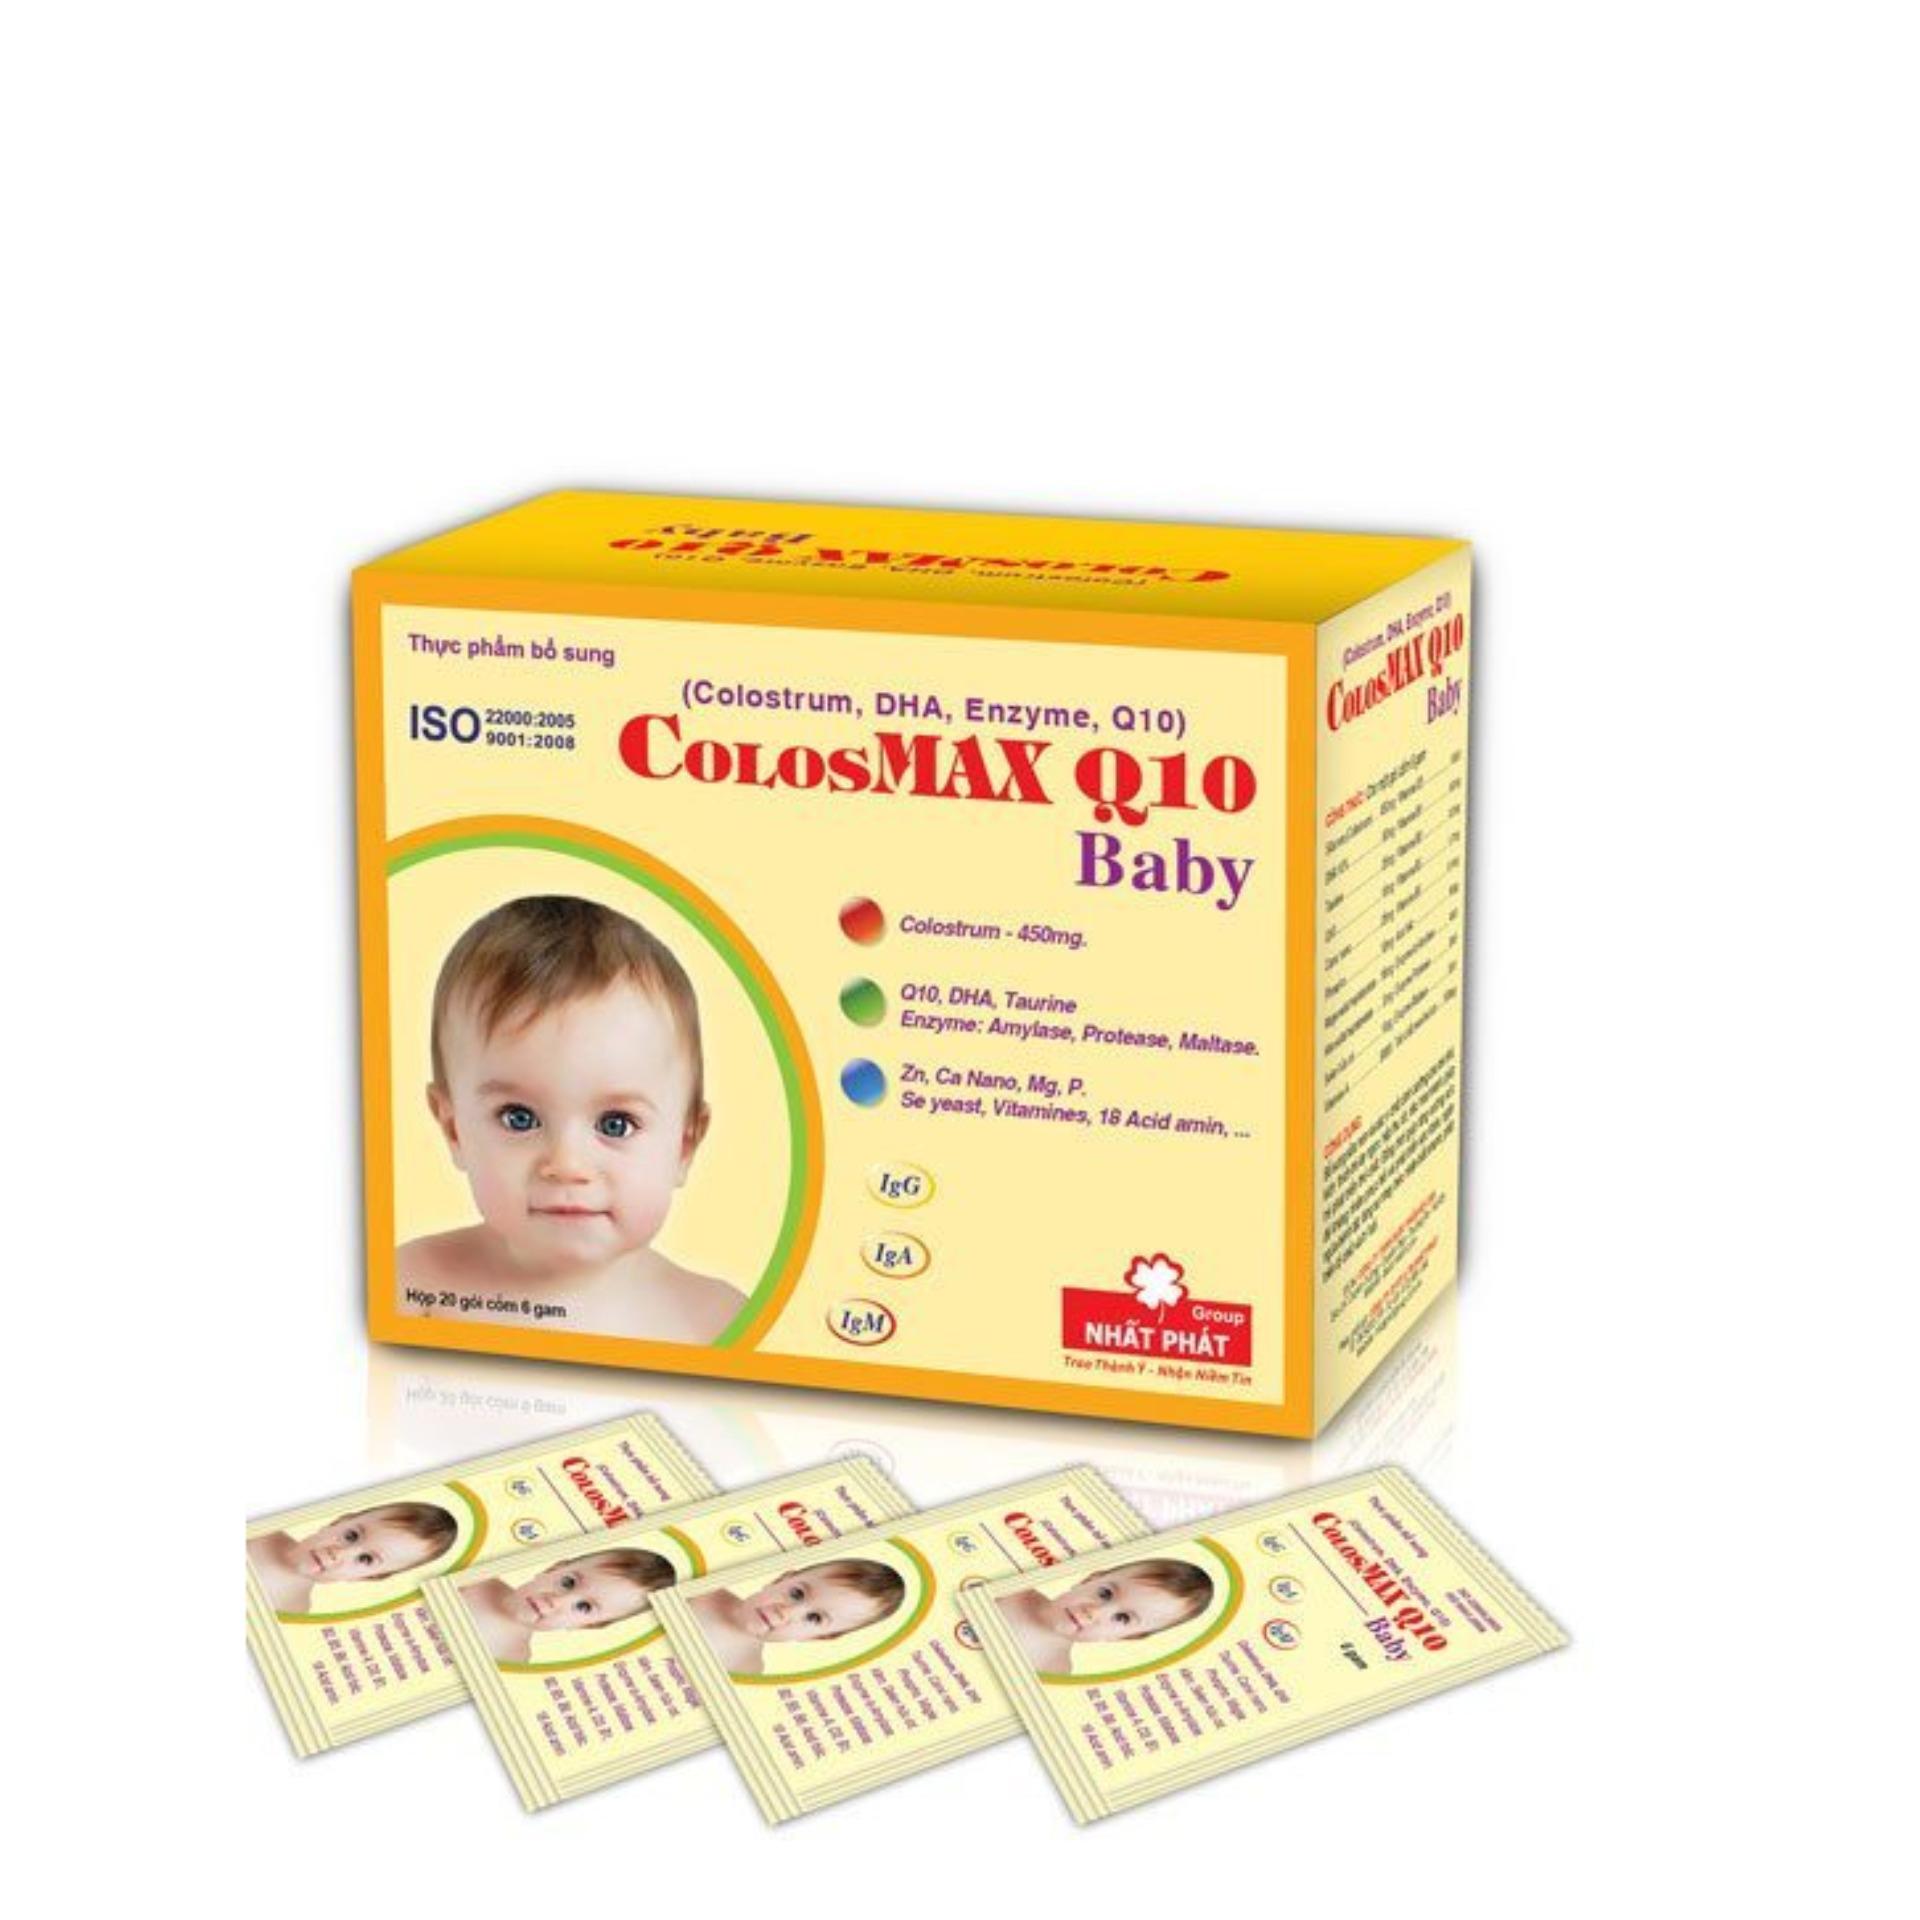 COLOSMAX Q10 BABY, Hộp 20 gói (dưới 1 tuổi)